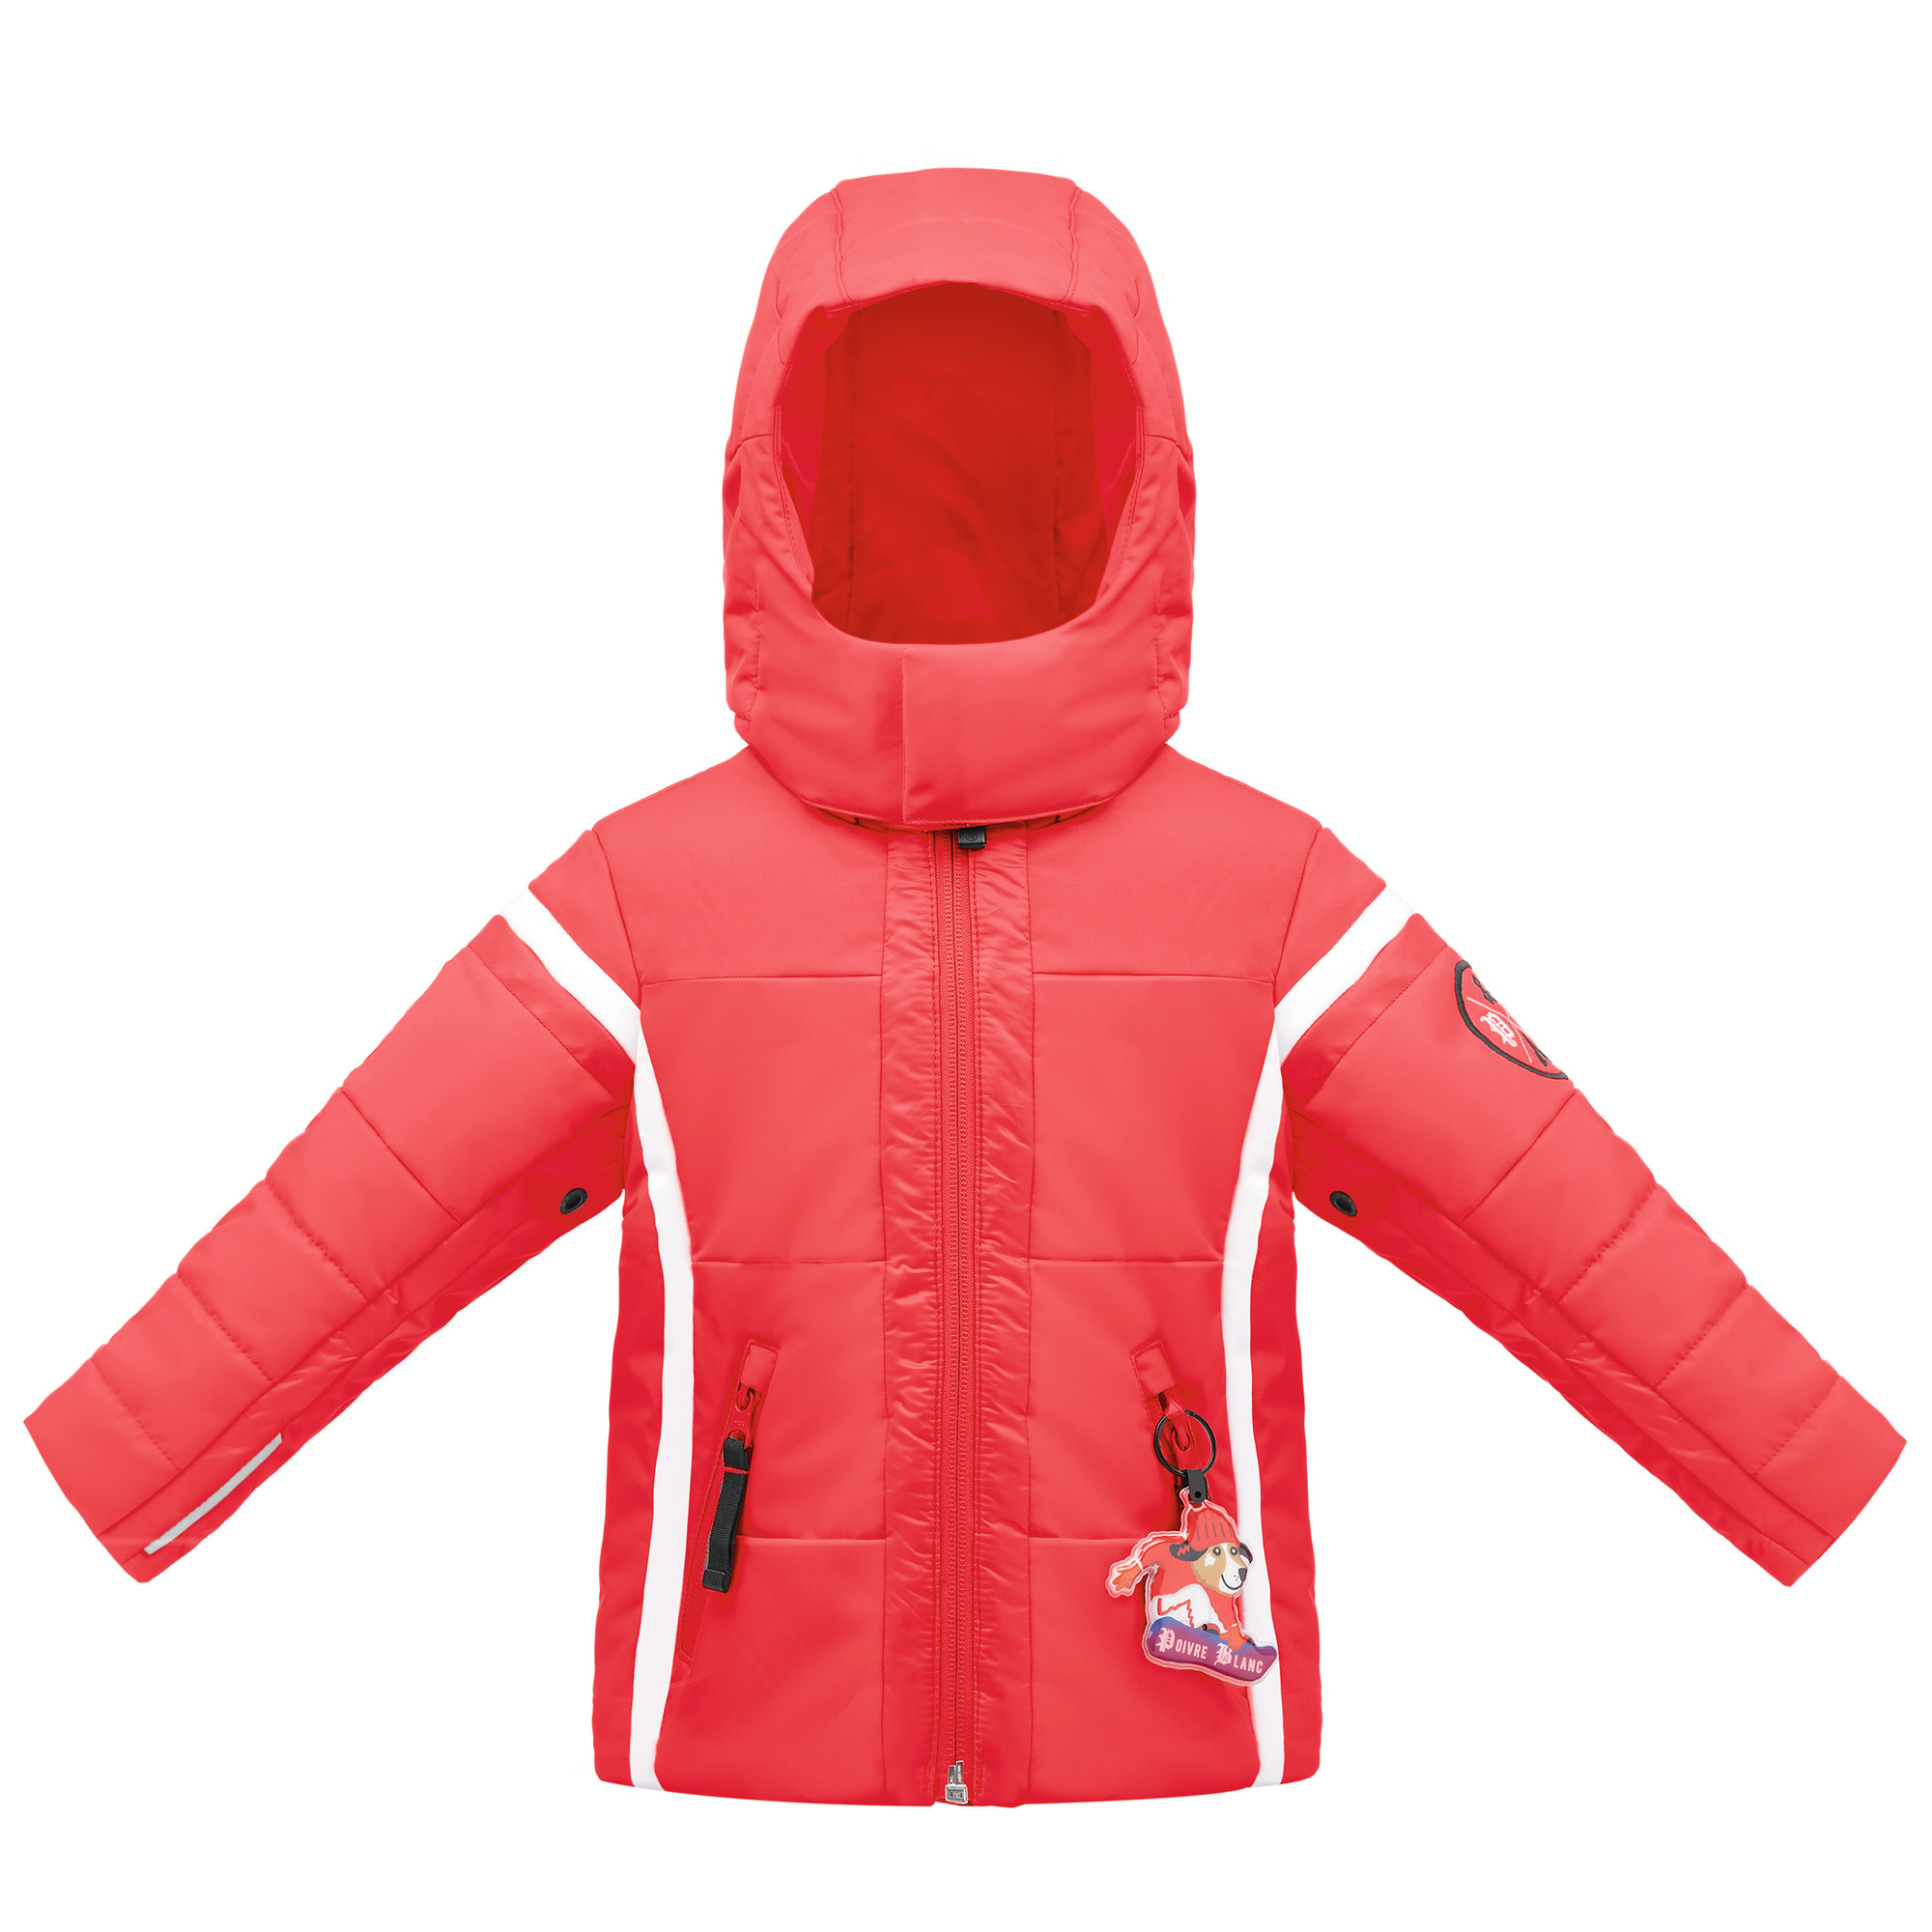  Ski & Snow Jackets -  poivre blanc Baby Boy Ski Jacket